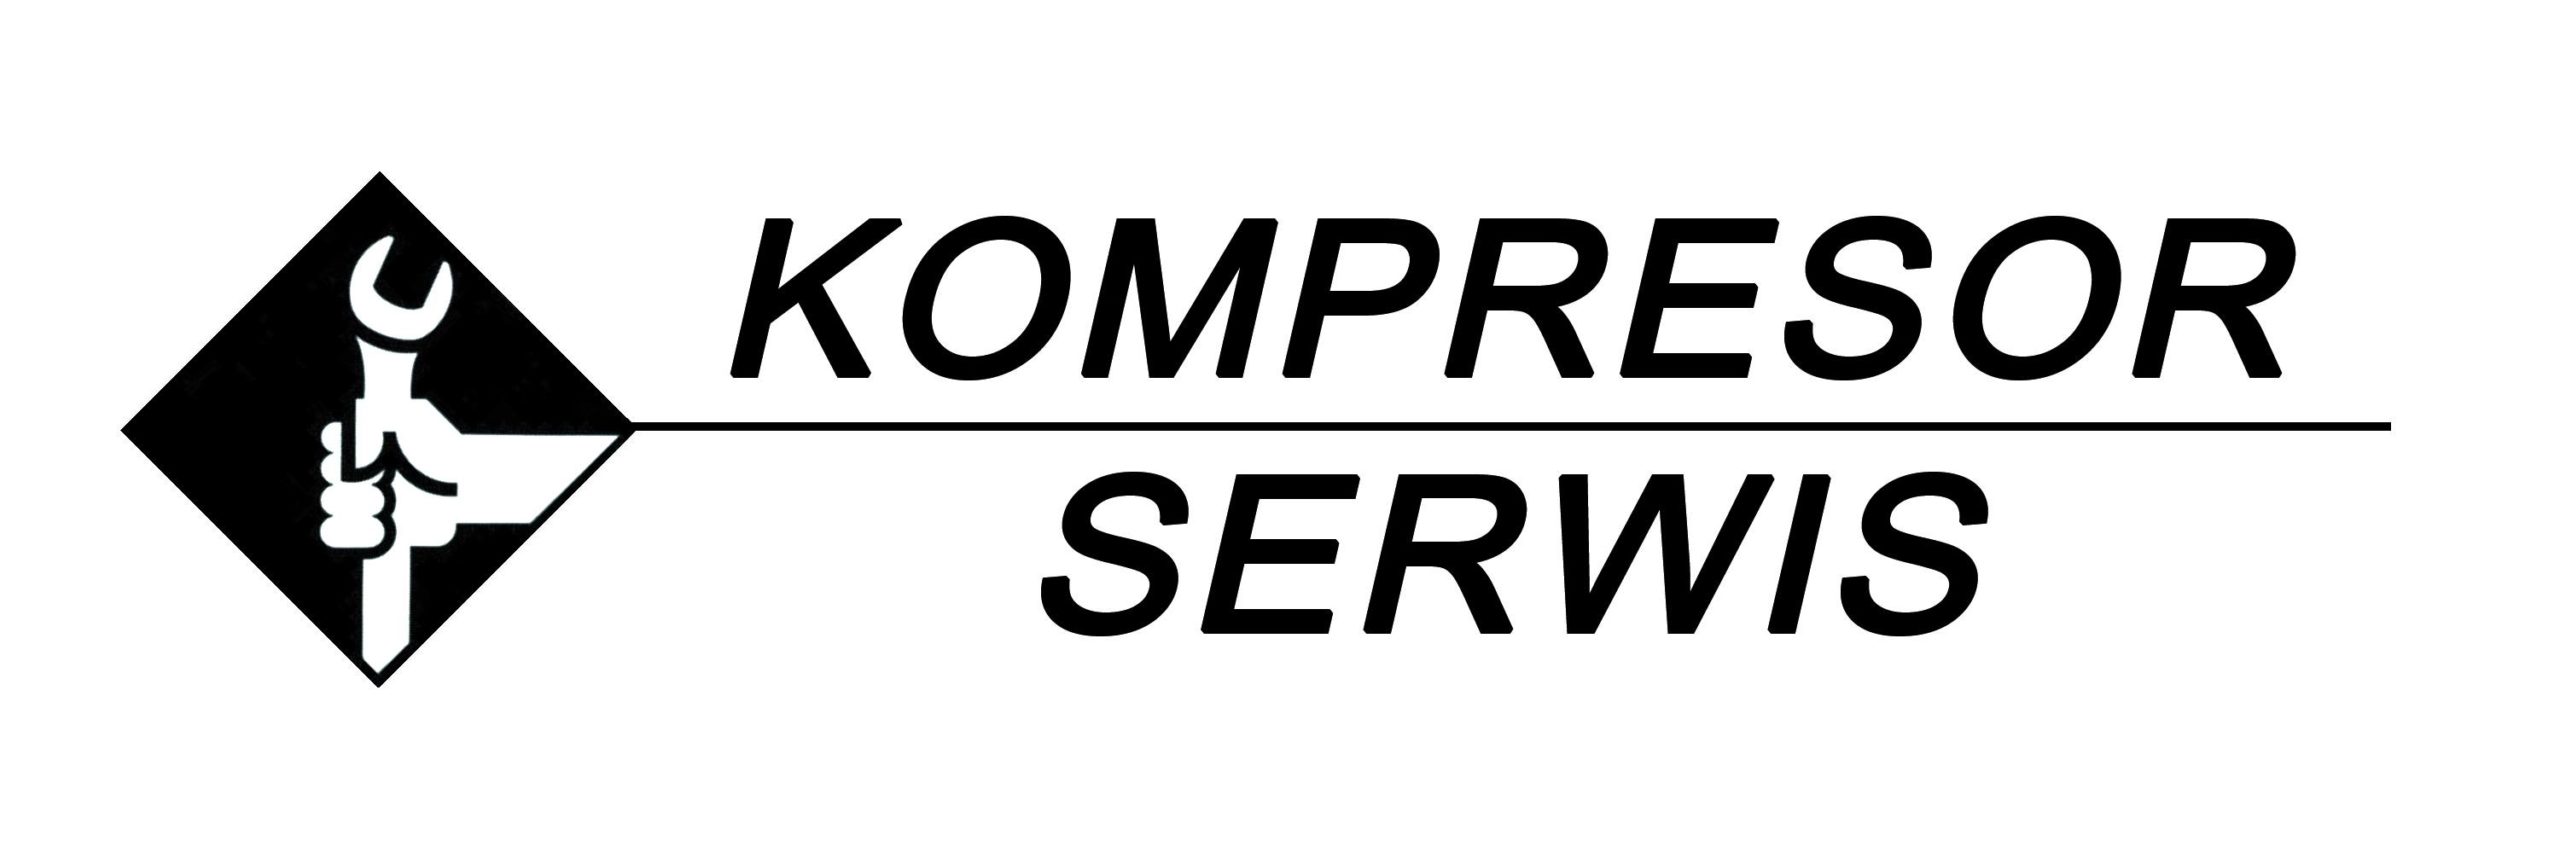 Kompresor Serwis: Serwis - Naprawa - Sprzedaż sprężarek